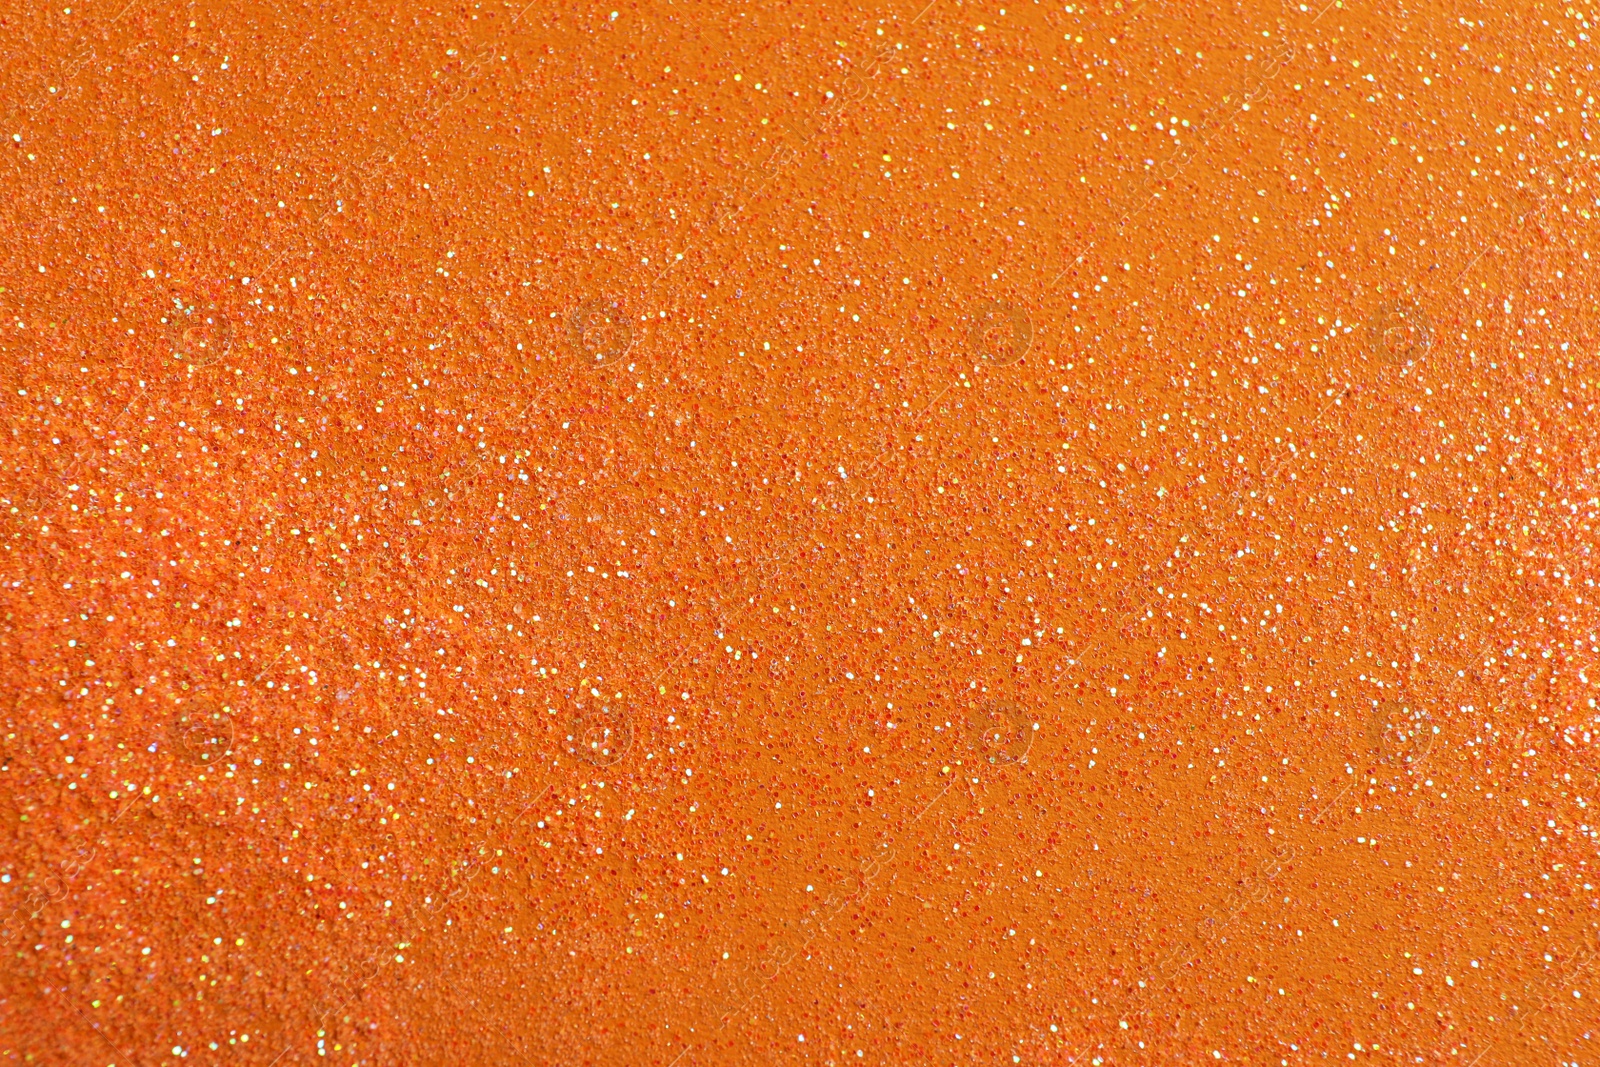 Photo of Shiny bright glitter on orange background, flat lay